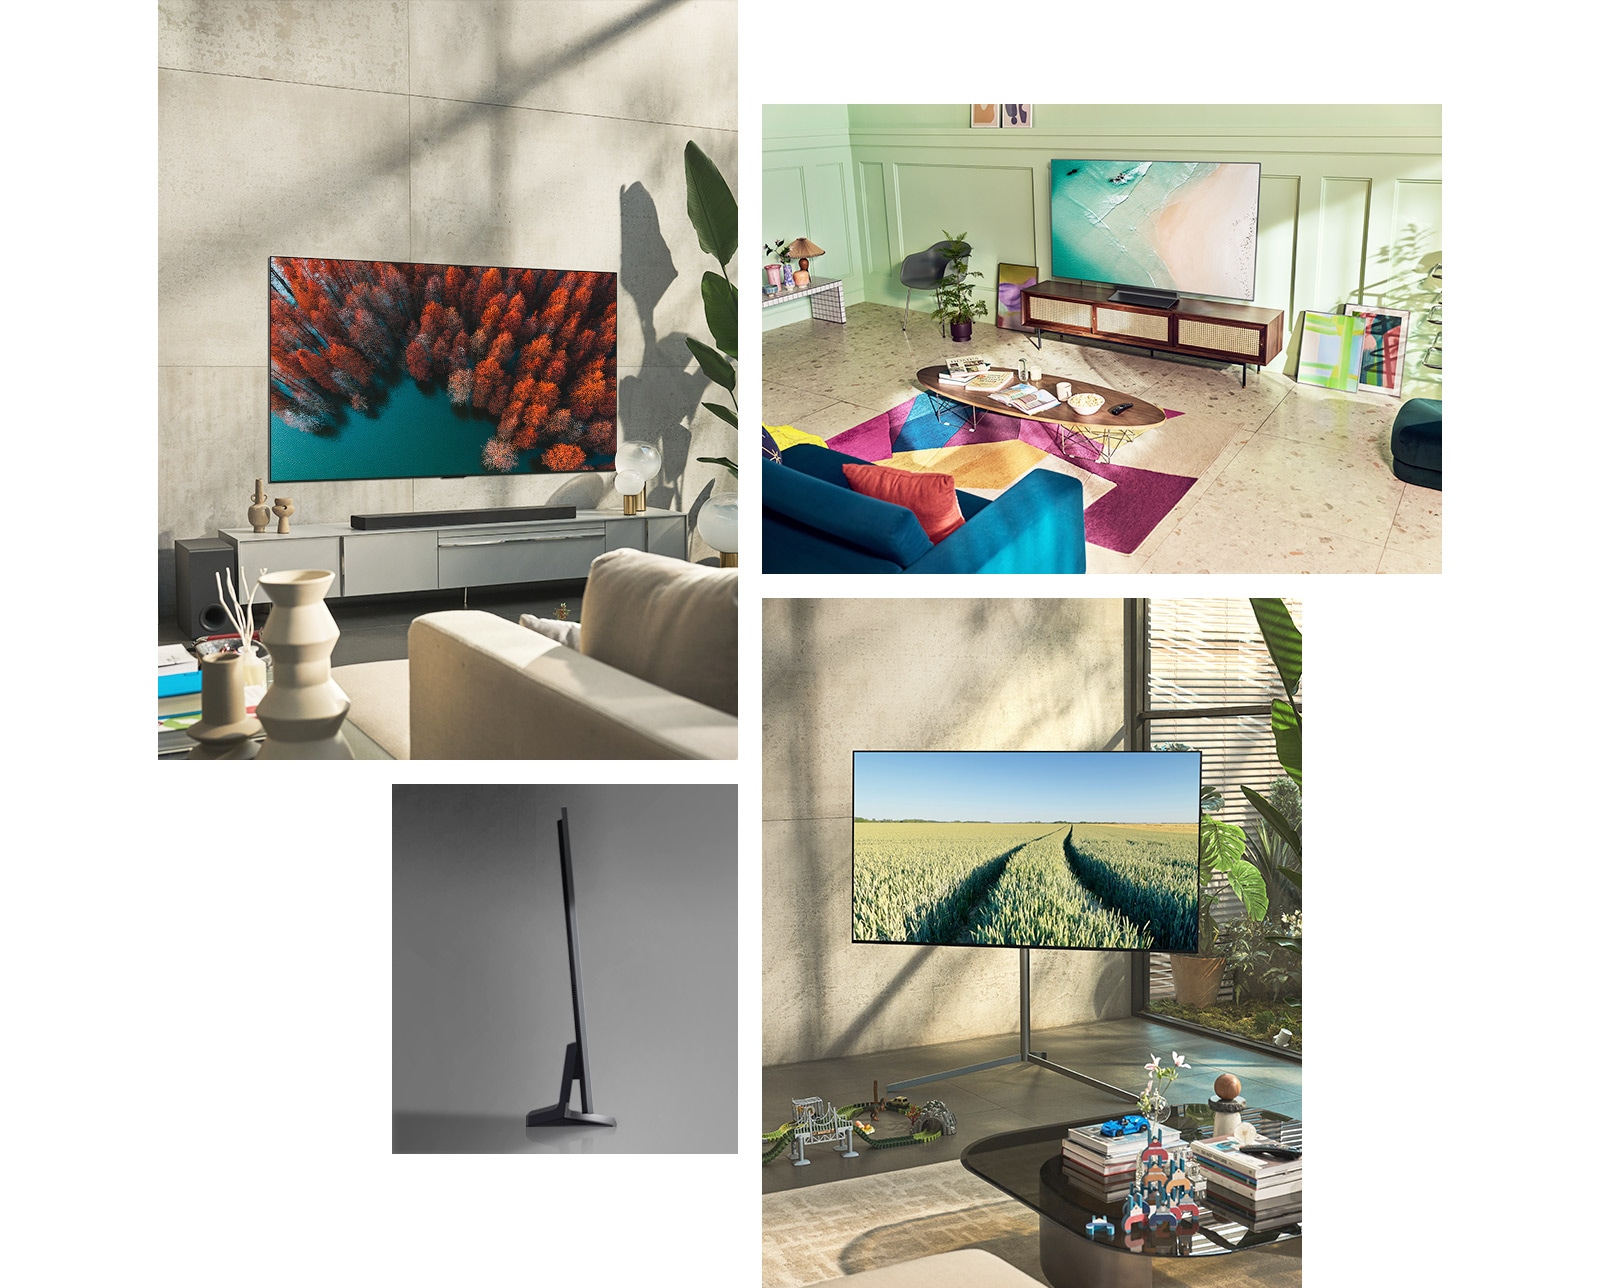 Một chiếc LG OLED G2 được treo trên tường trong phòng khách với cây cối, một chồng sách và một chiếc tủ phong cách cổ điển. Một chiếc LG OLED G2 được treo trên tường trong một căn phòng trang trí tối giản bên cạnh một kệ bày đồ trang trí đơn sắc. Hình ảnh cạnh bên siêu mỏng của LG OLED G2. Một chiếc LG OLED G2 được treo trên tường phòng khách đầy màu sắc với hành tinh khô, bộ khuếch tán và bình hoa. Hình ảnh cận cảnh cạnh của một chiếc LG OLED G2 siêu mỏng. 